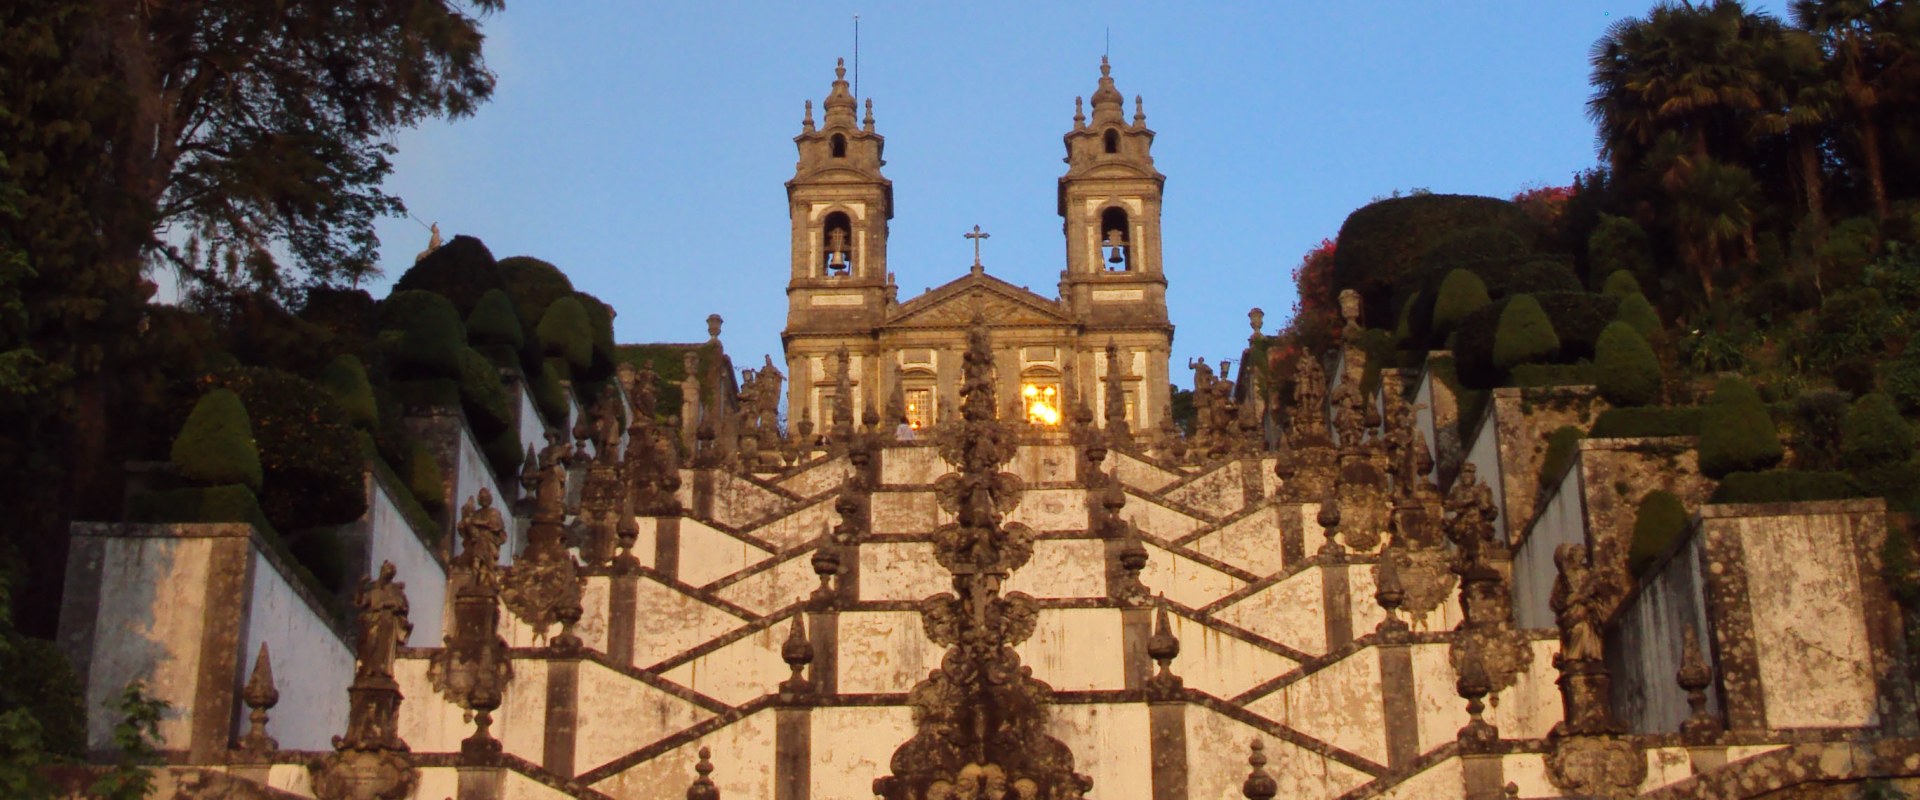 Descobrindo a herança religiosa de Braga, Portugal